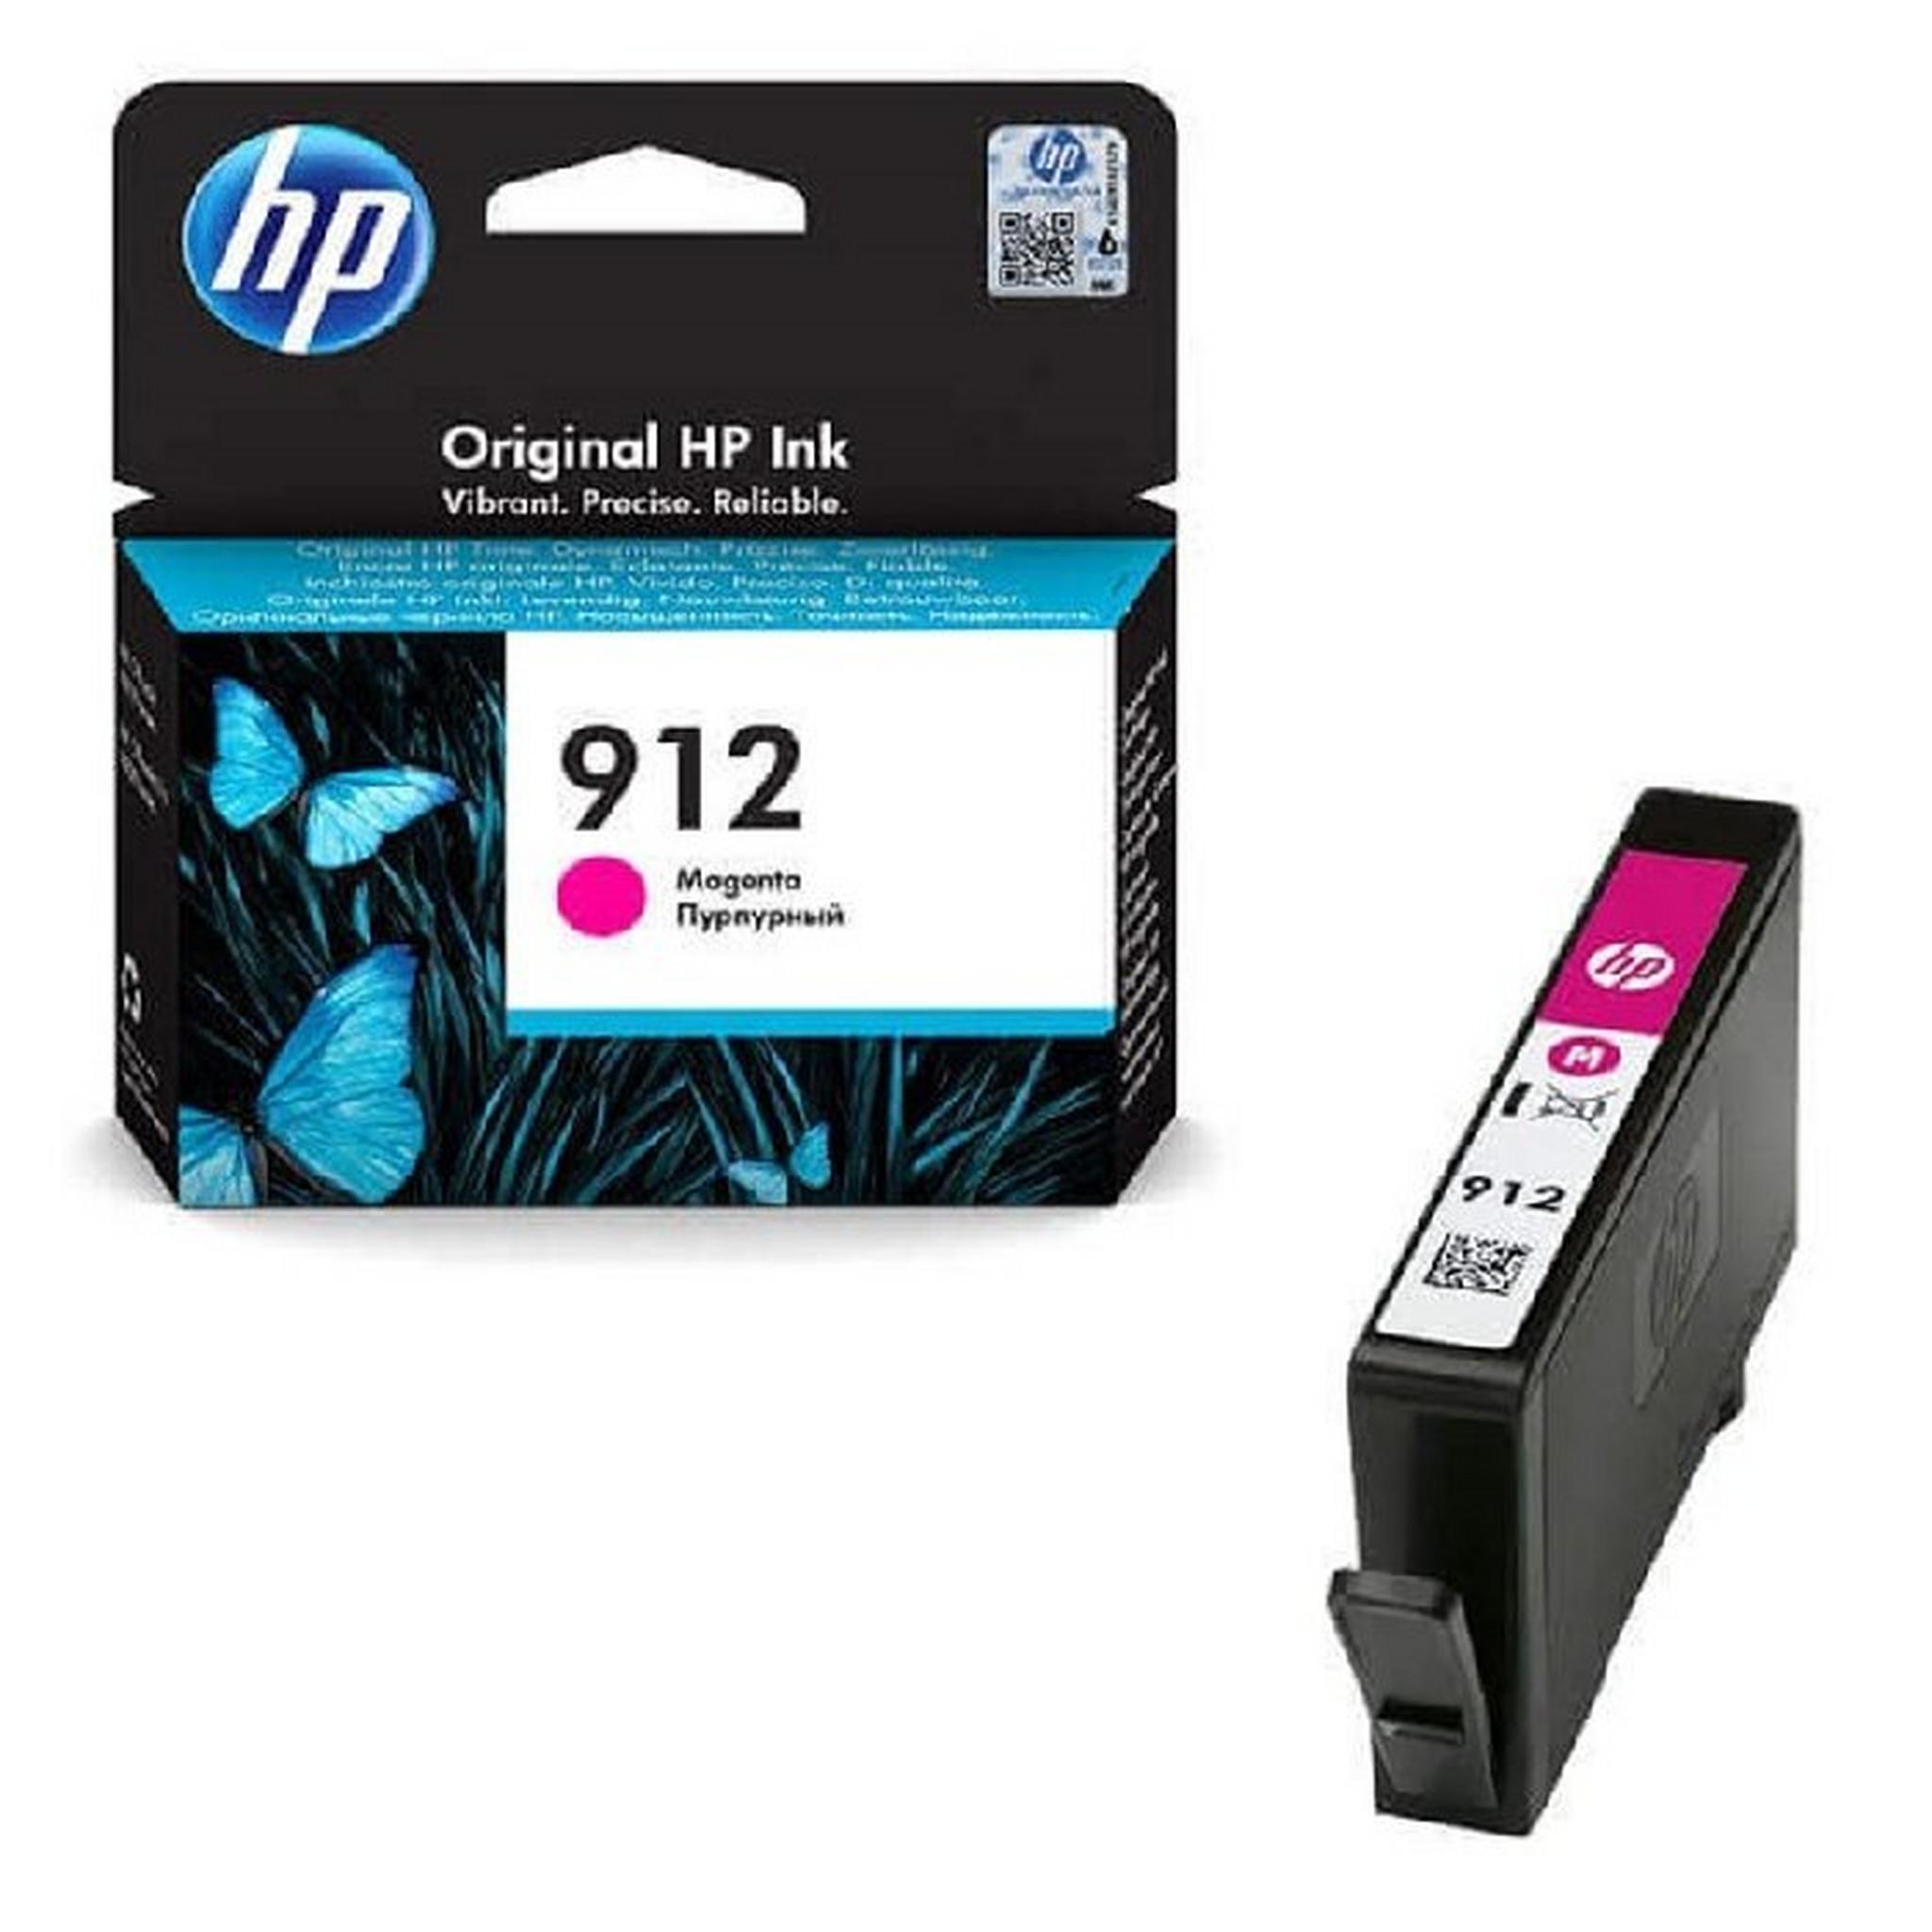 HP Ink 912 Magenta Original Ink Cartridge